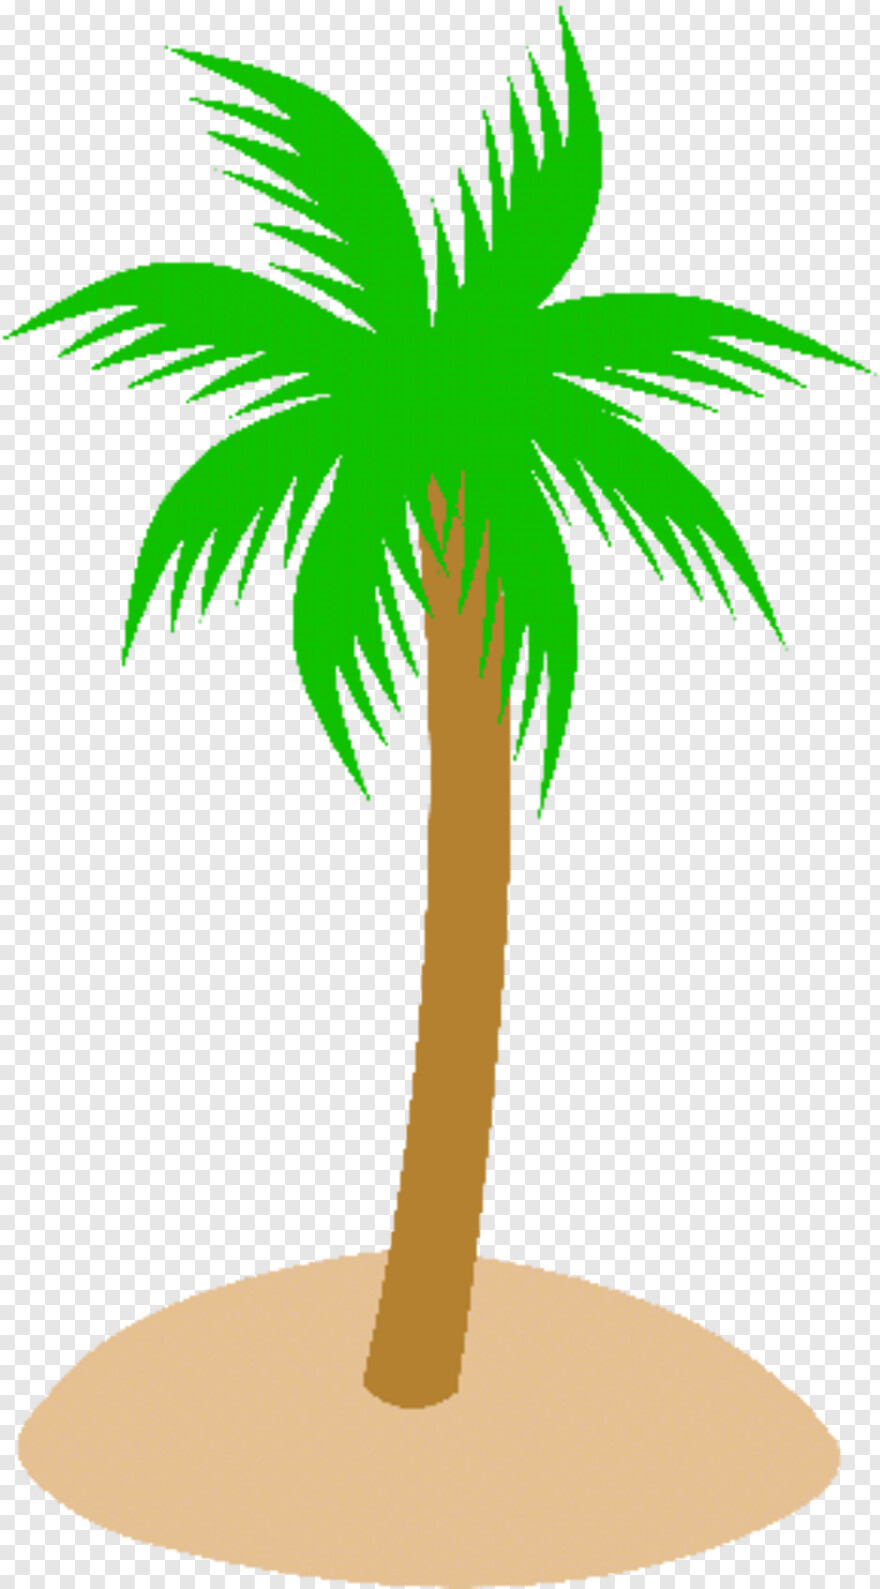 palm-tree # 460149